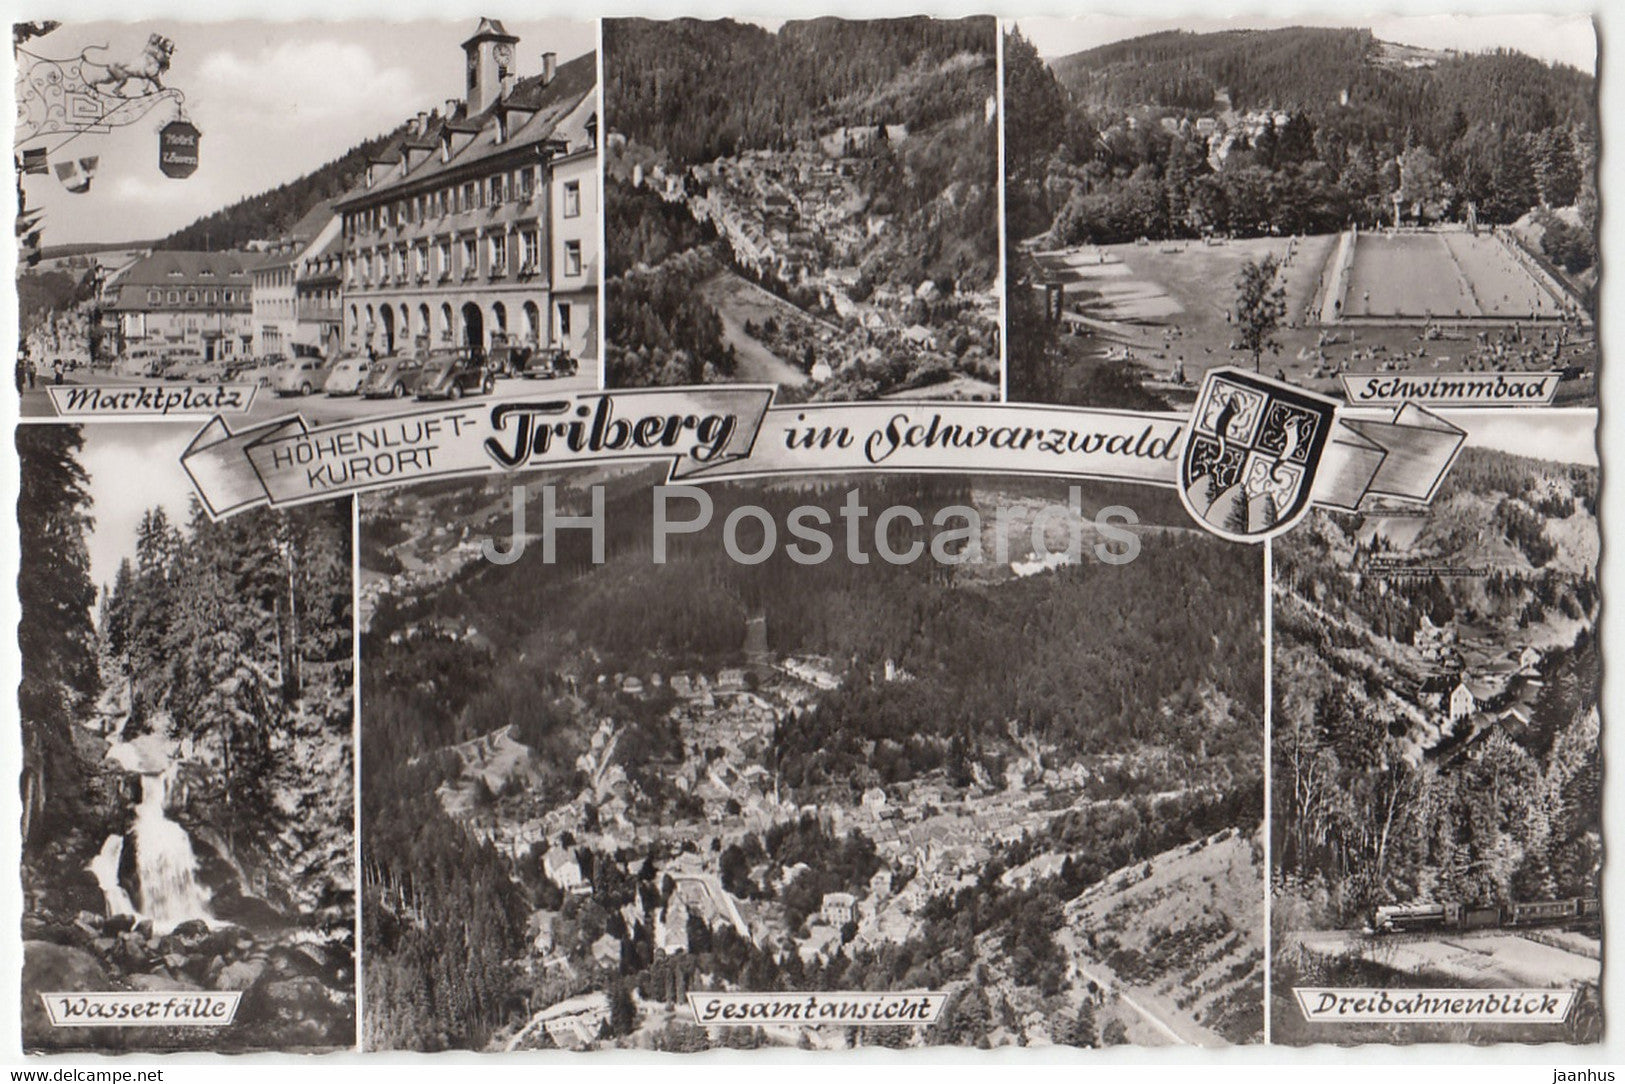 Triberg im Schwarzwald - Marktplatz - Schwimmbad - Wasserfalle - Dreibahnenblick - Germany - unused - JH Postcards